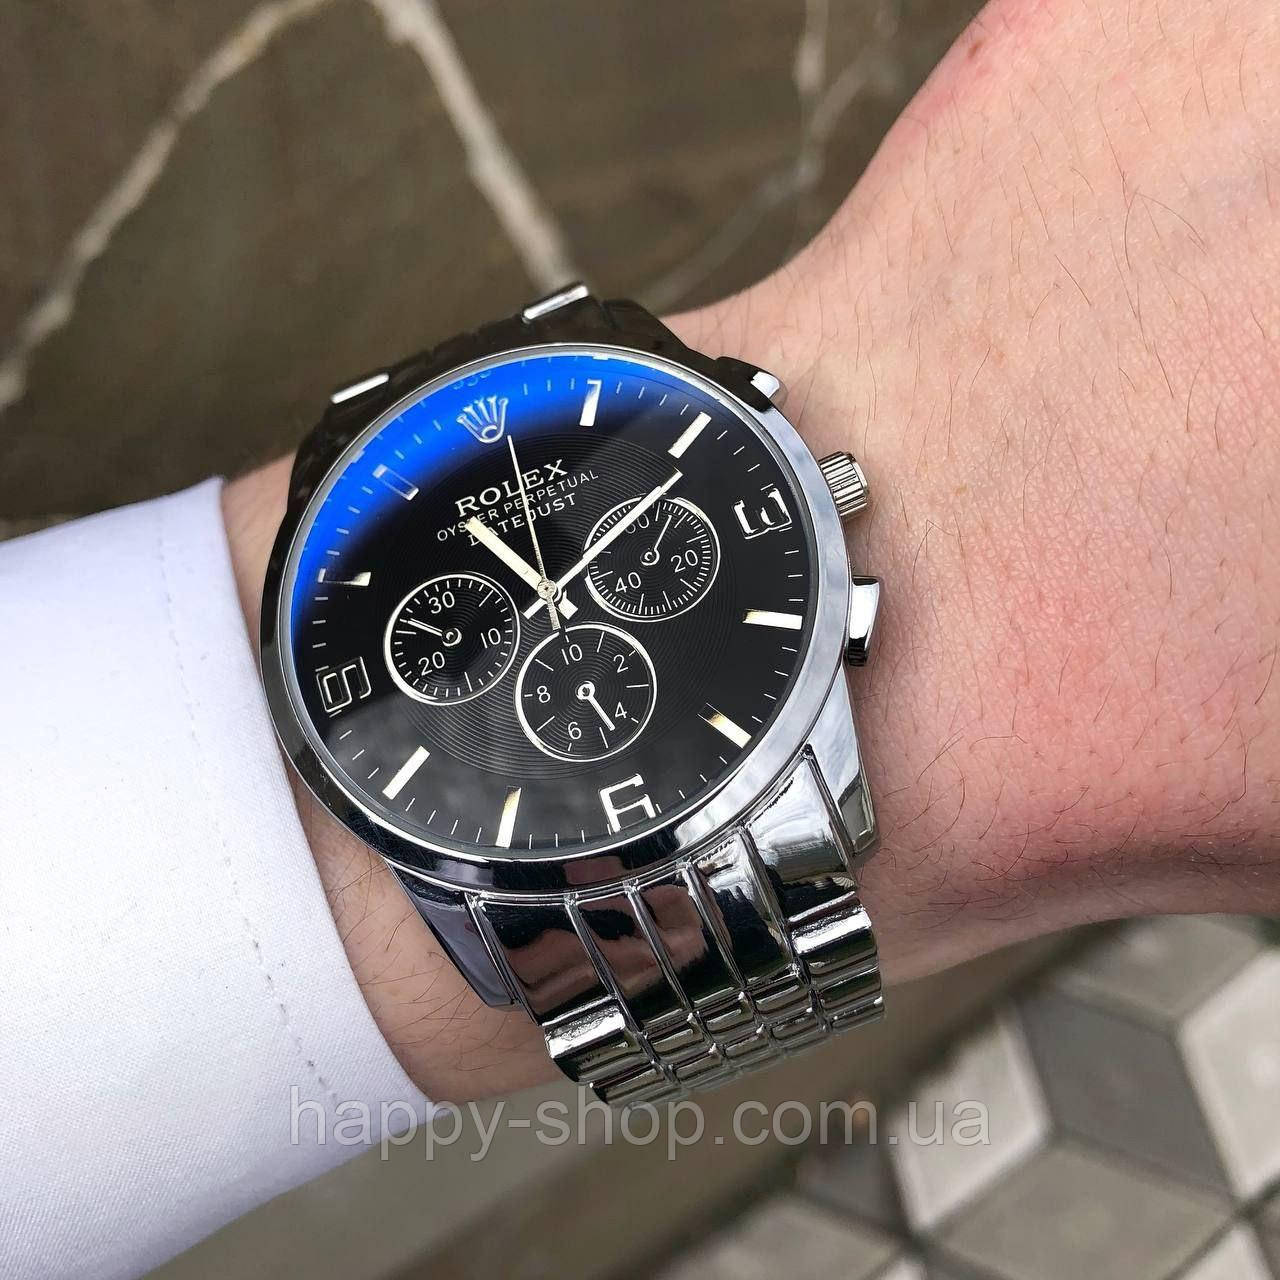 Чоловічий наручний стильний молодіжний годинник на руку на металевому ремінці Ролекс